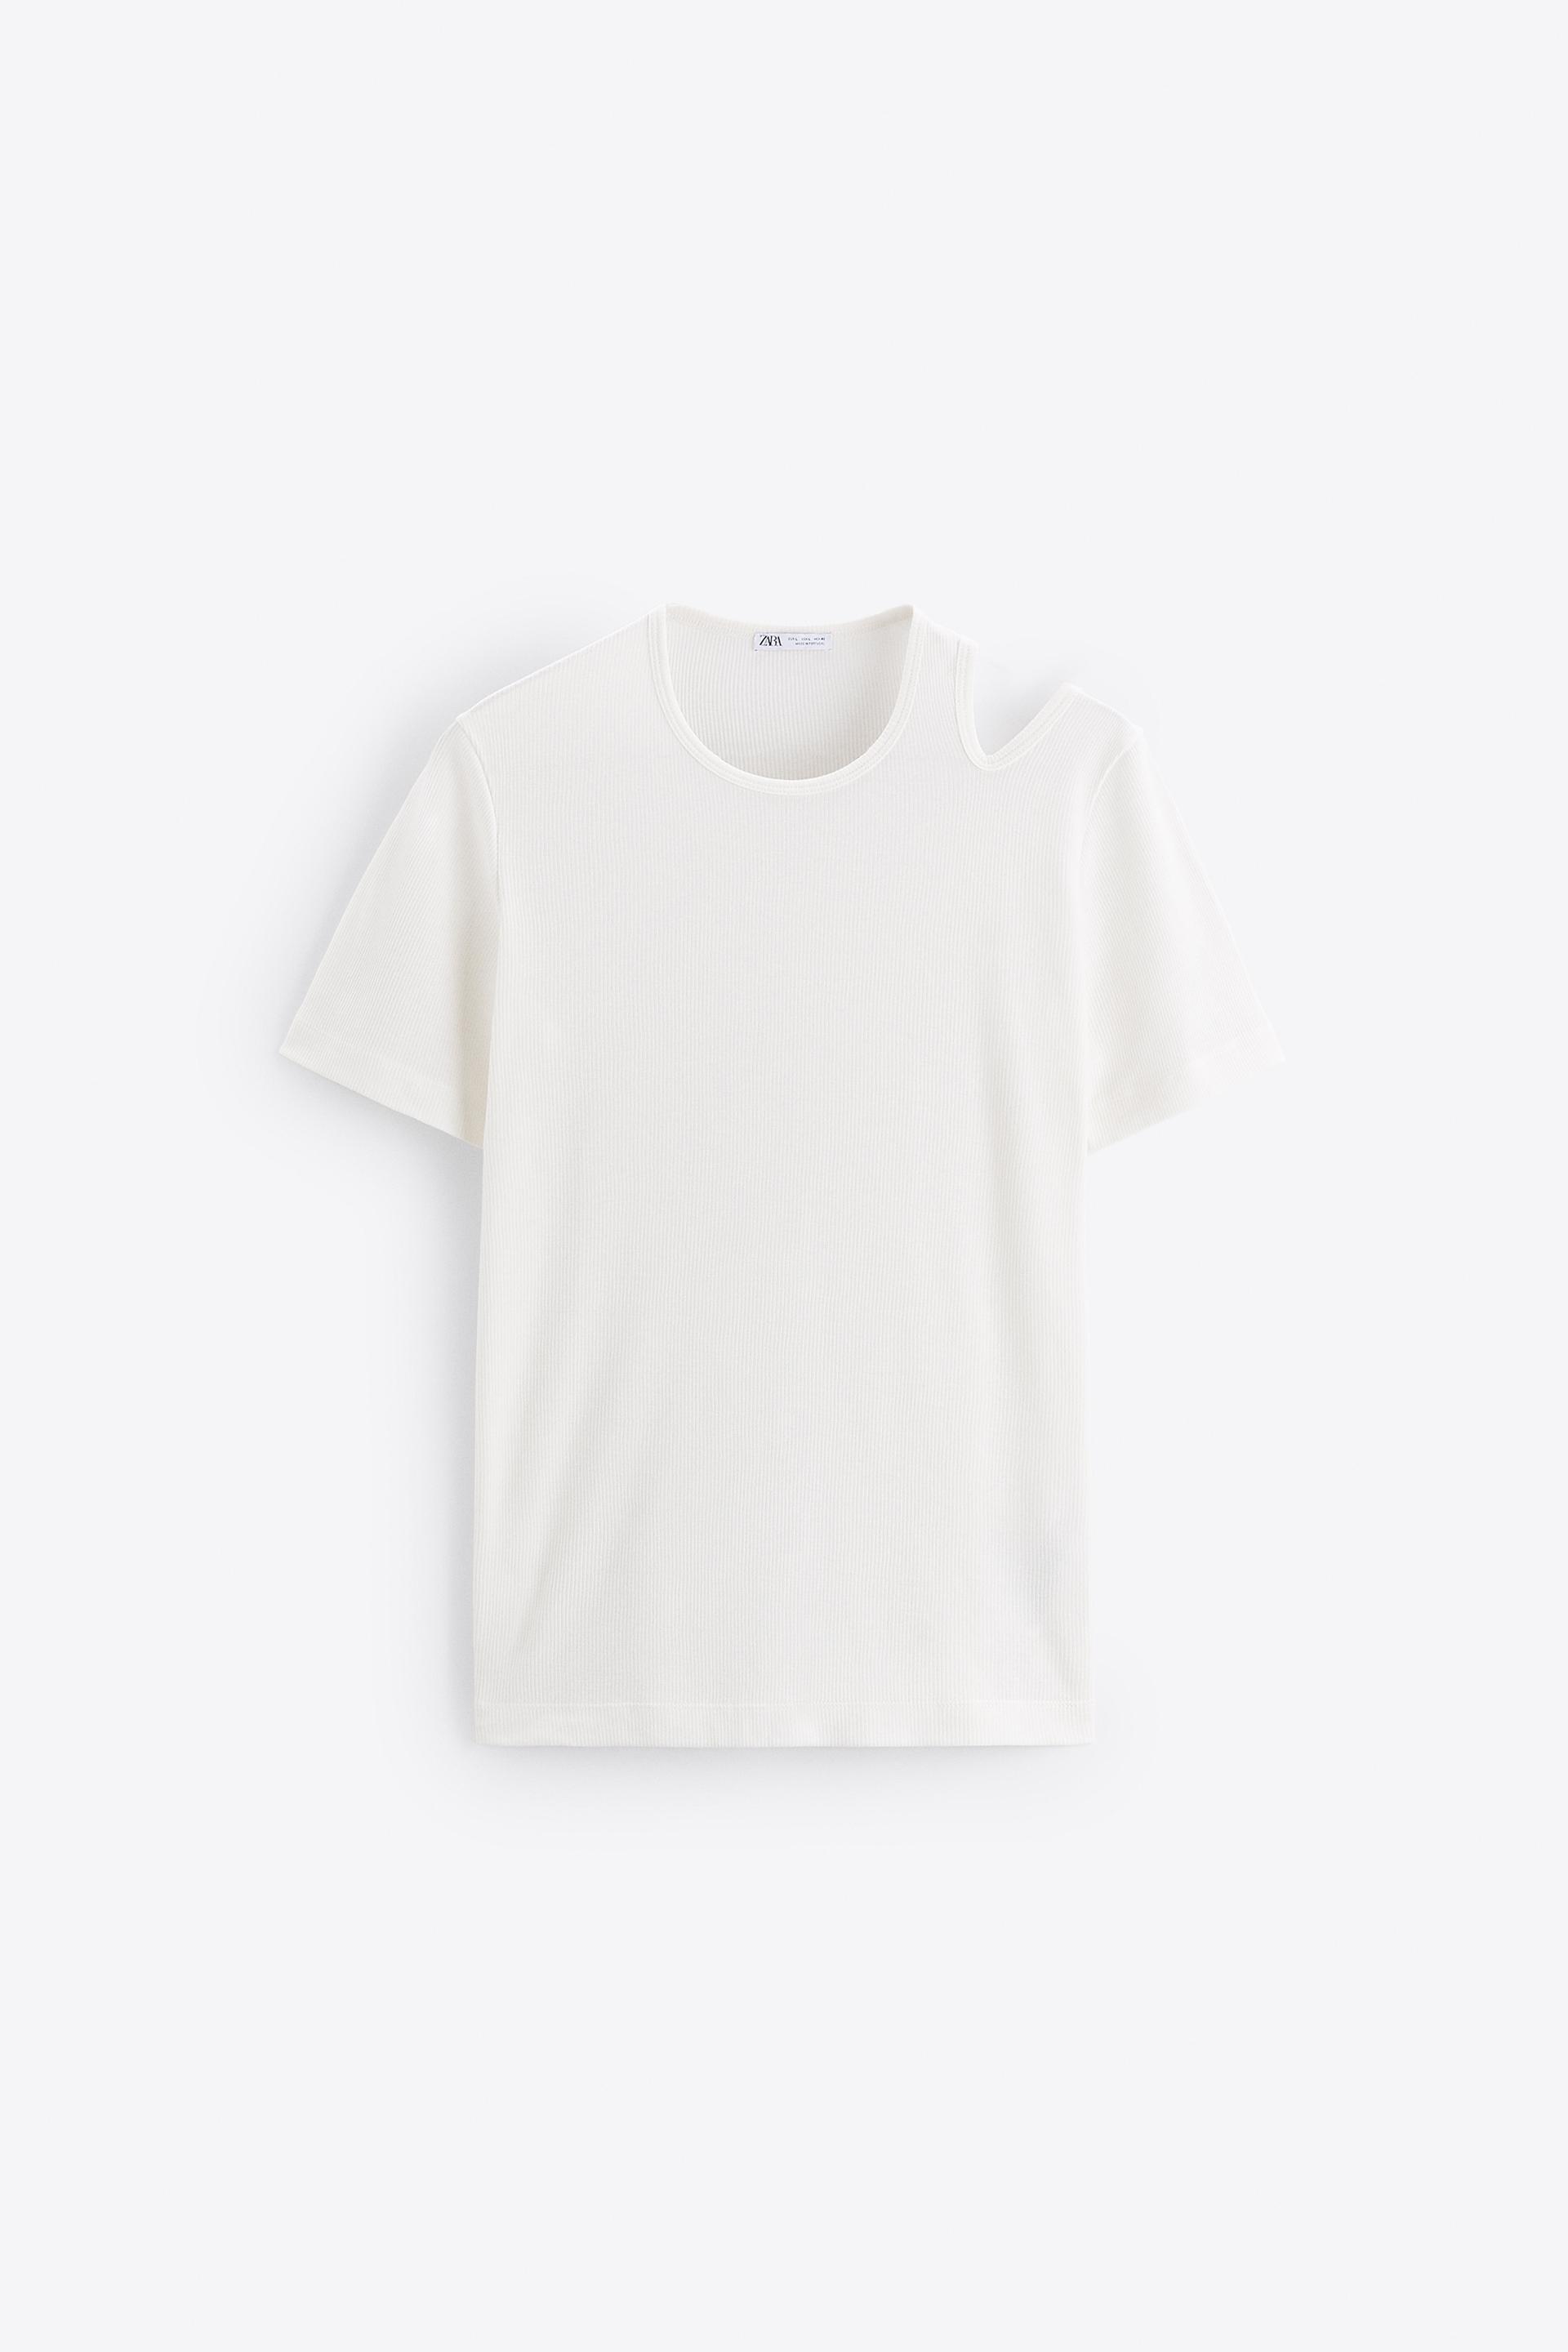 ZARA 鏤空羅紋T恤